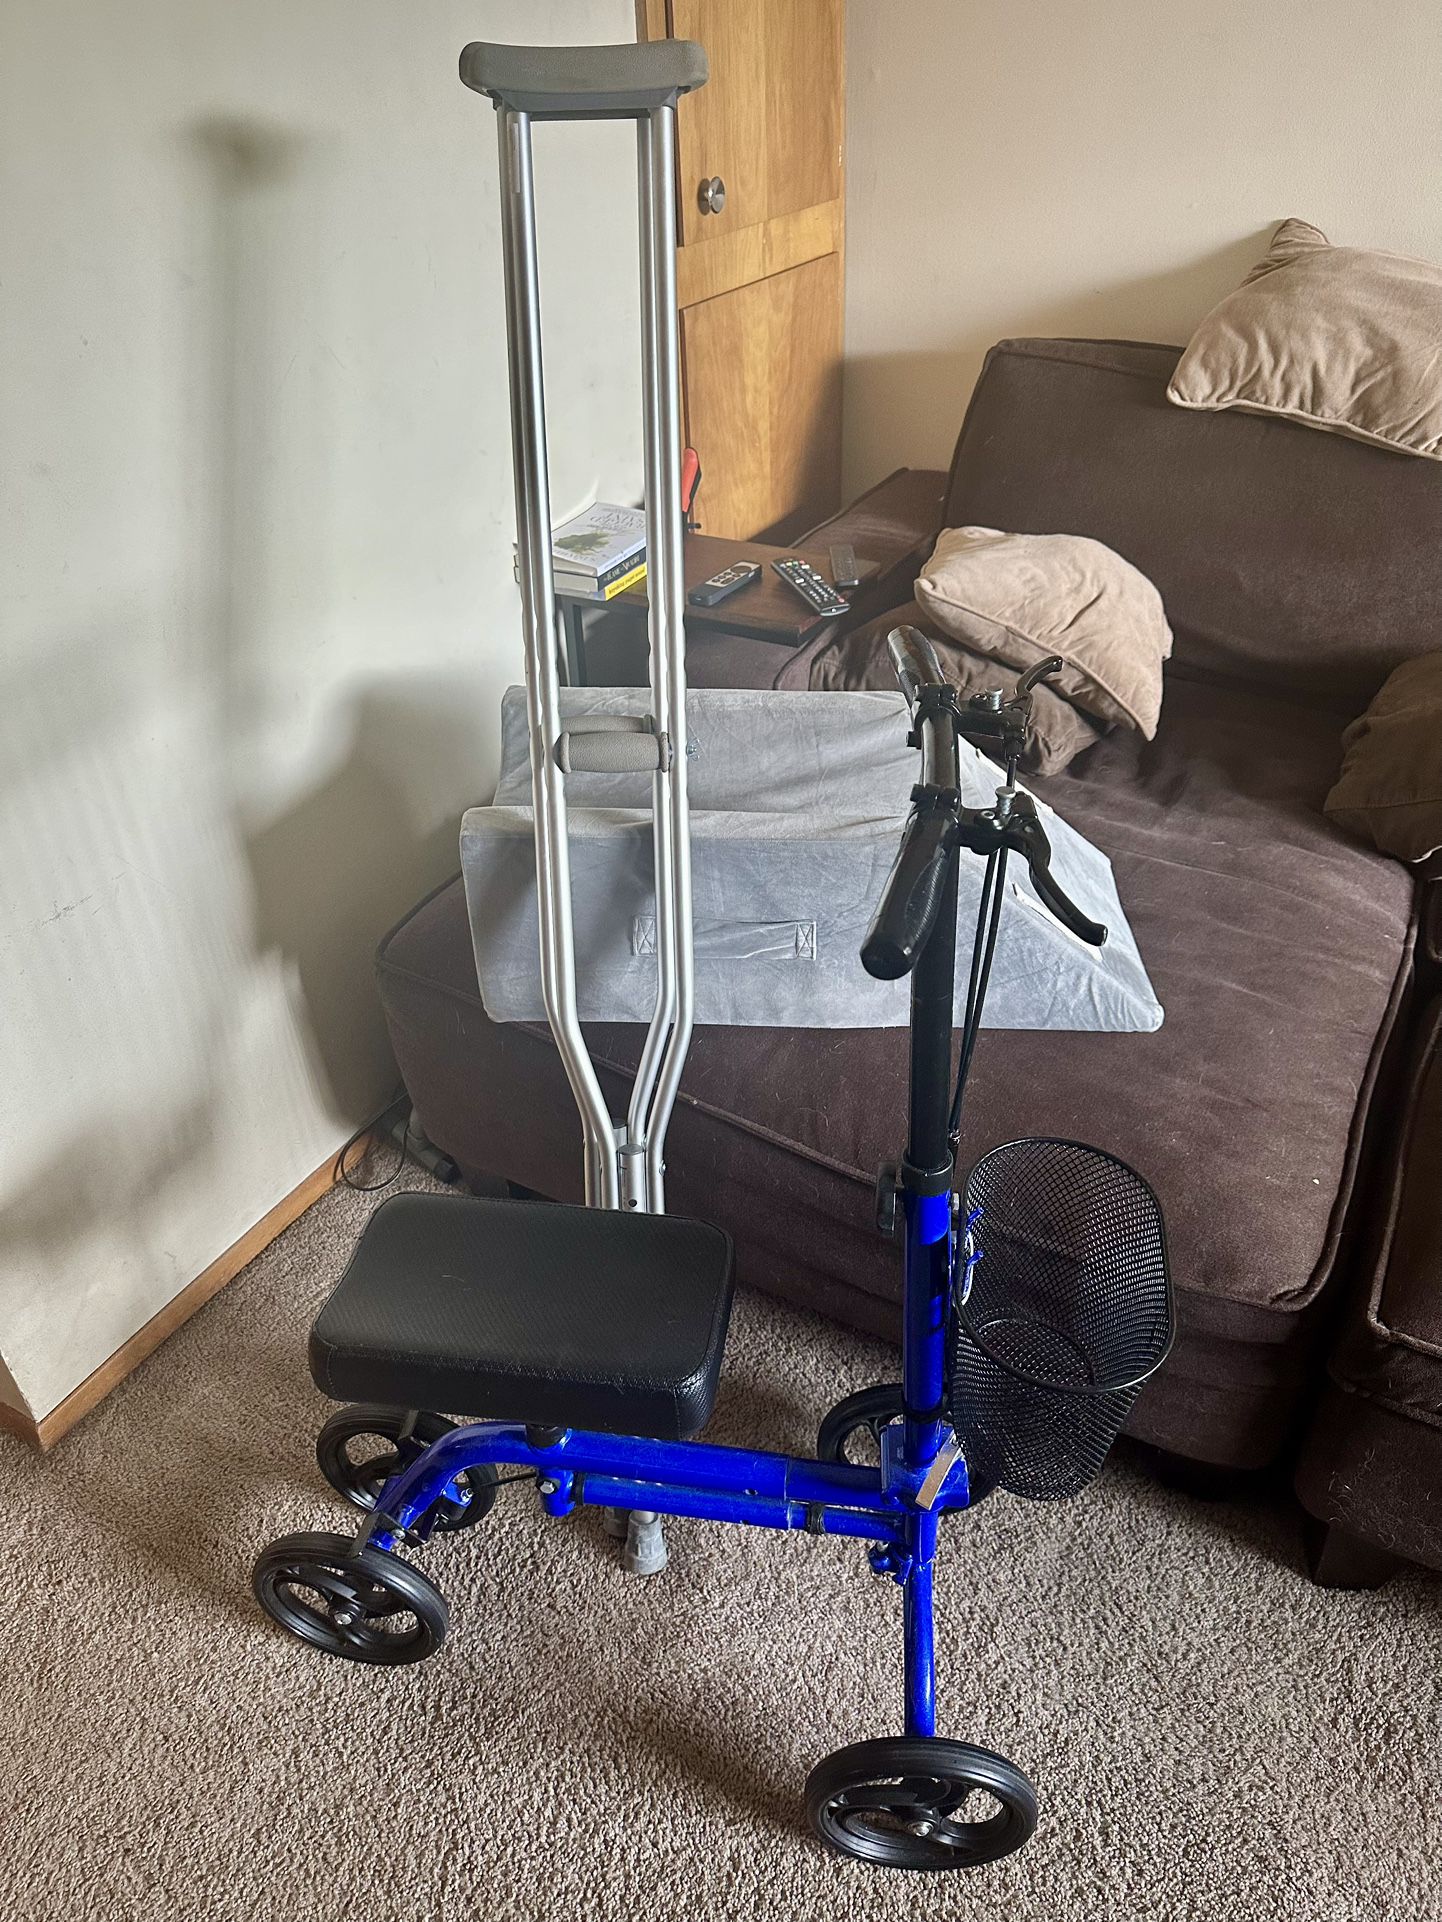 Achilles injury Kit - Knee Scooter, Crutches, Leg Pillow 